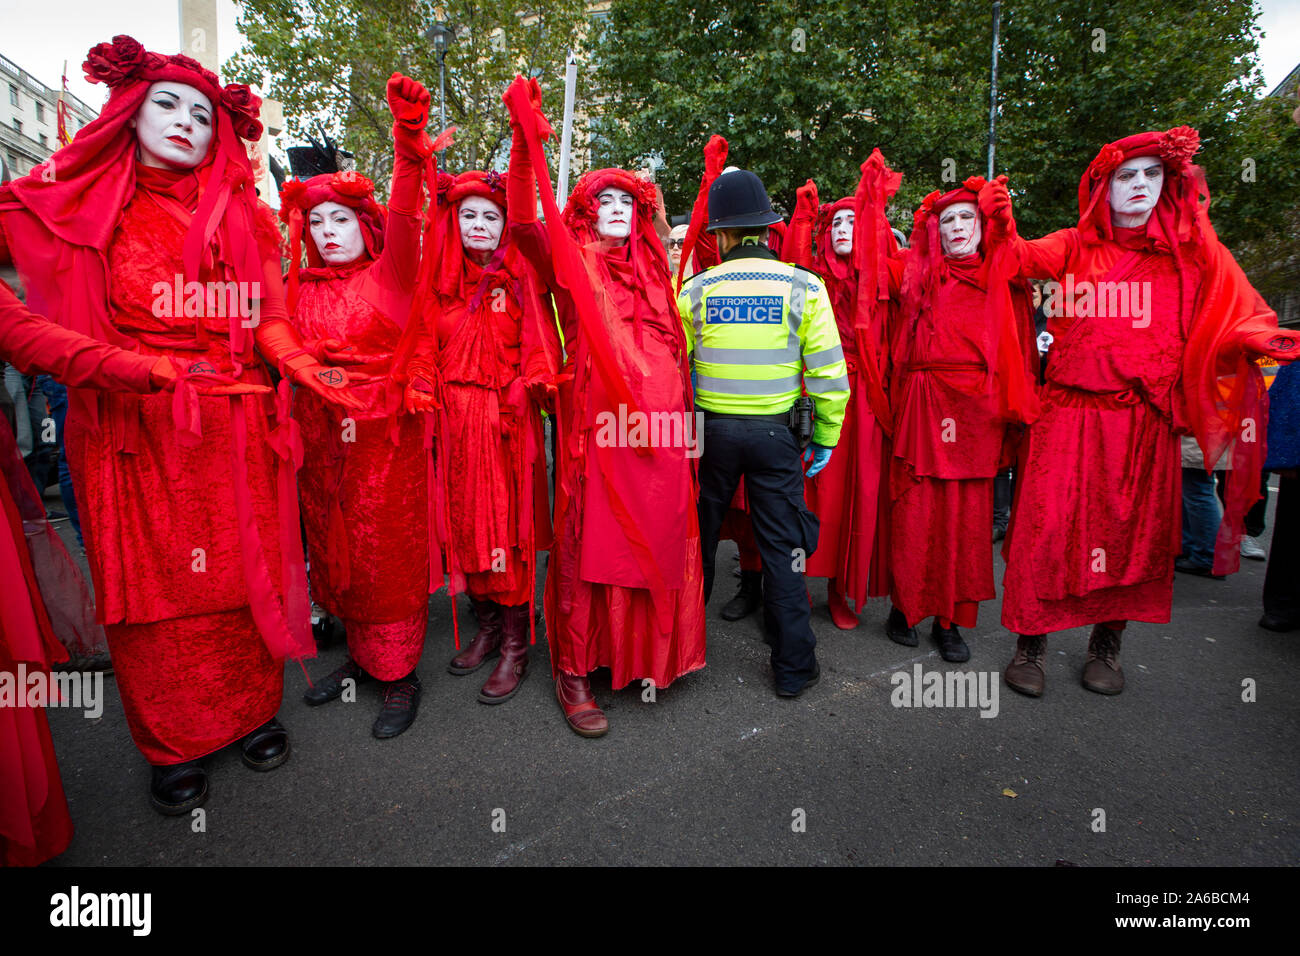 Londra, 10 ottobre 2019, estinzione della ribellione gruppo in costume rosso polizia circondano la preparazione di arresto acivists che hanno bloccato se stessi a una struttura in legno nella strada accanto a Trafalgar Square. Foto Stock